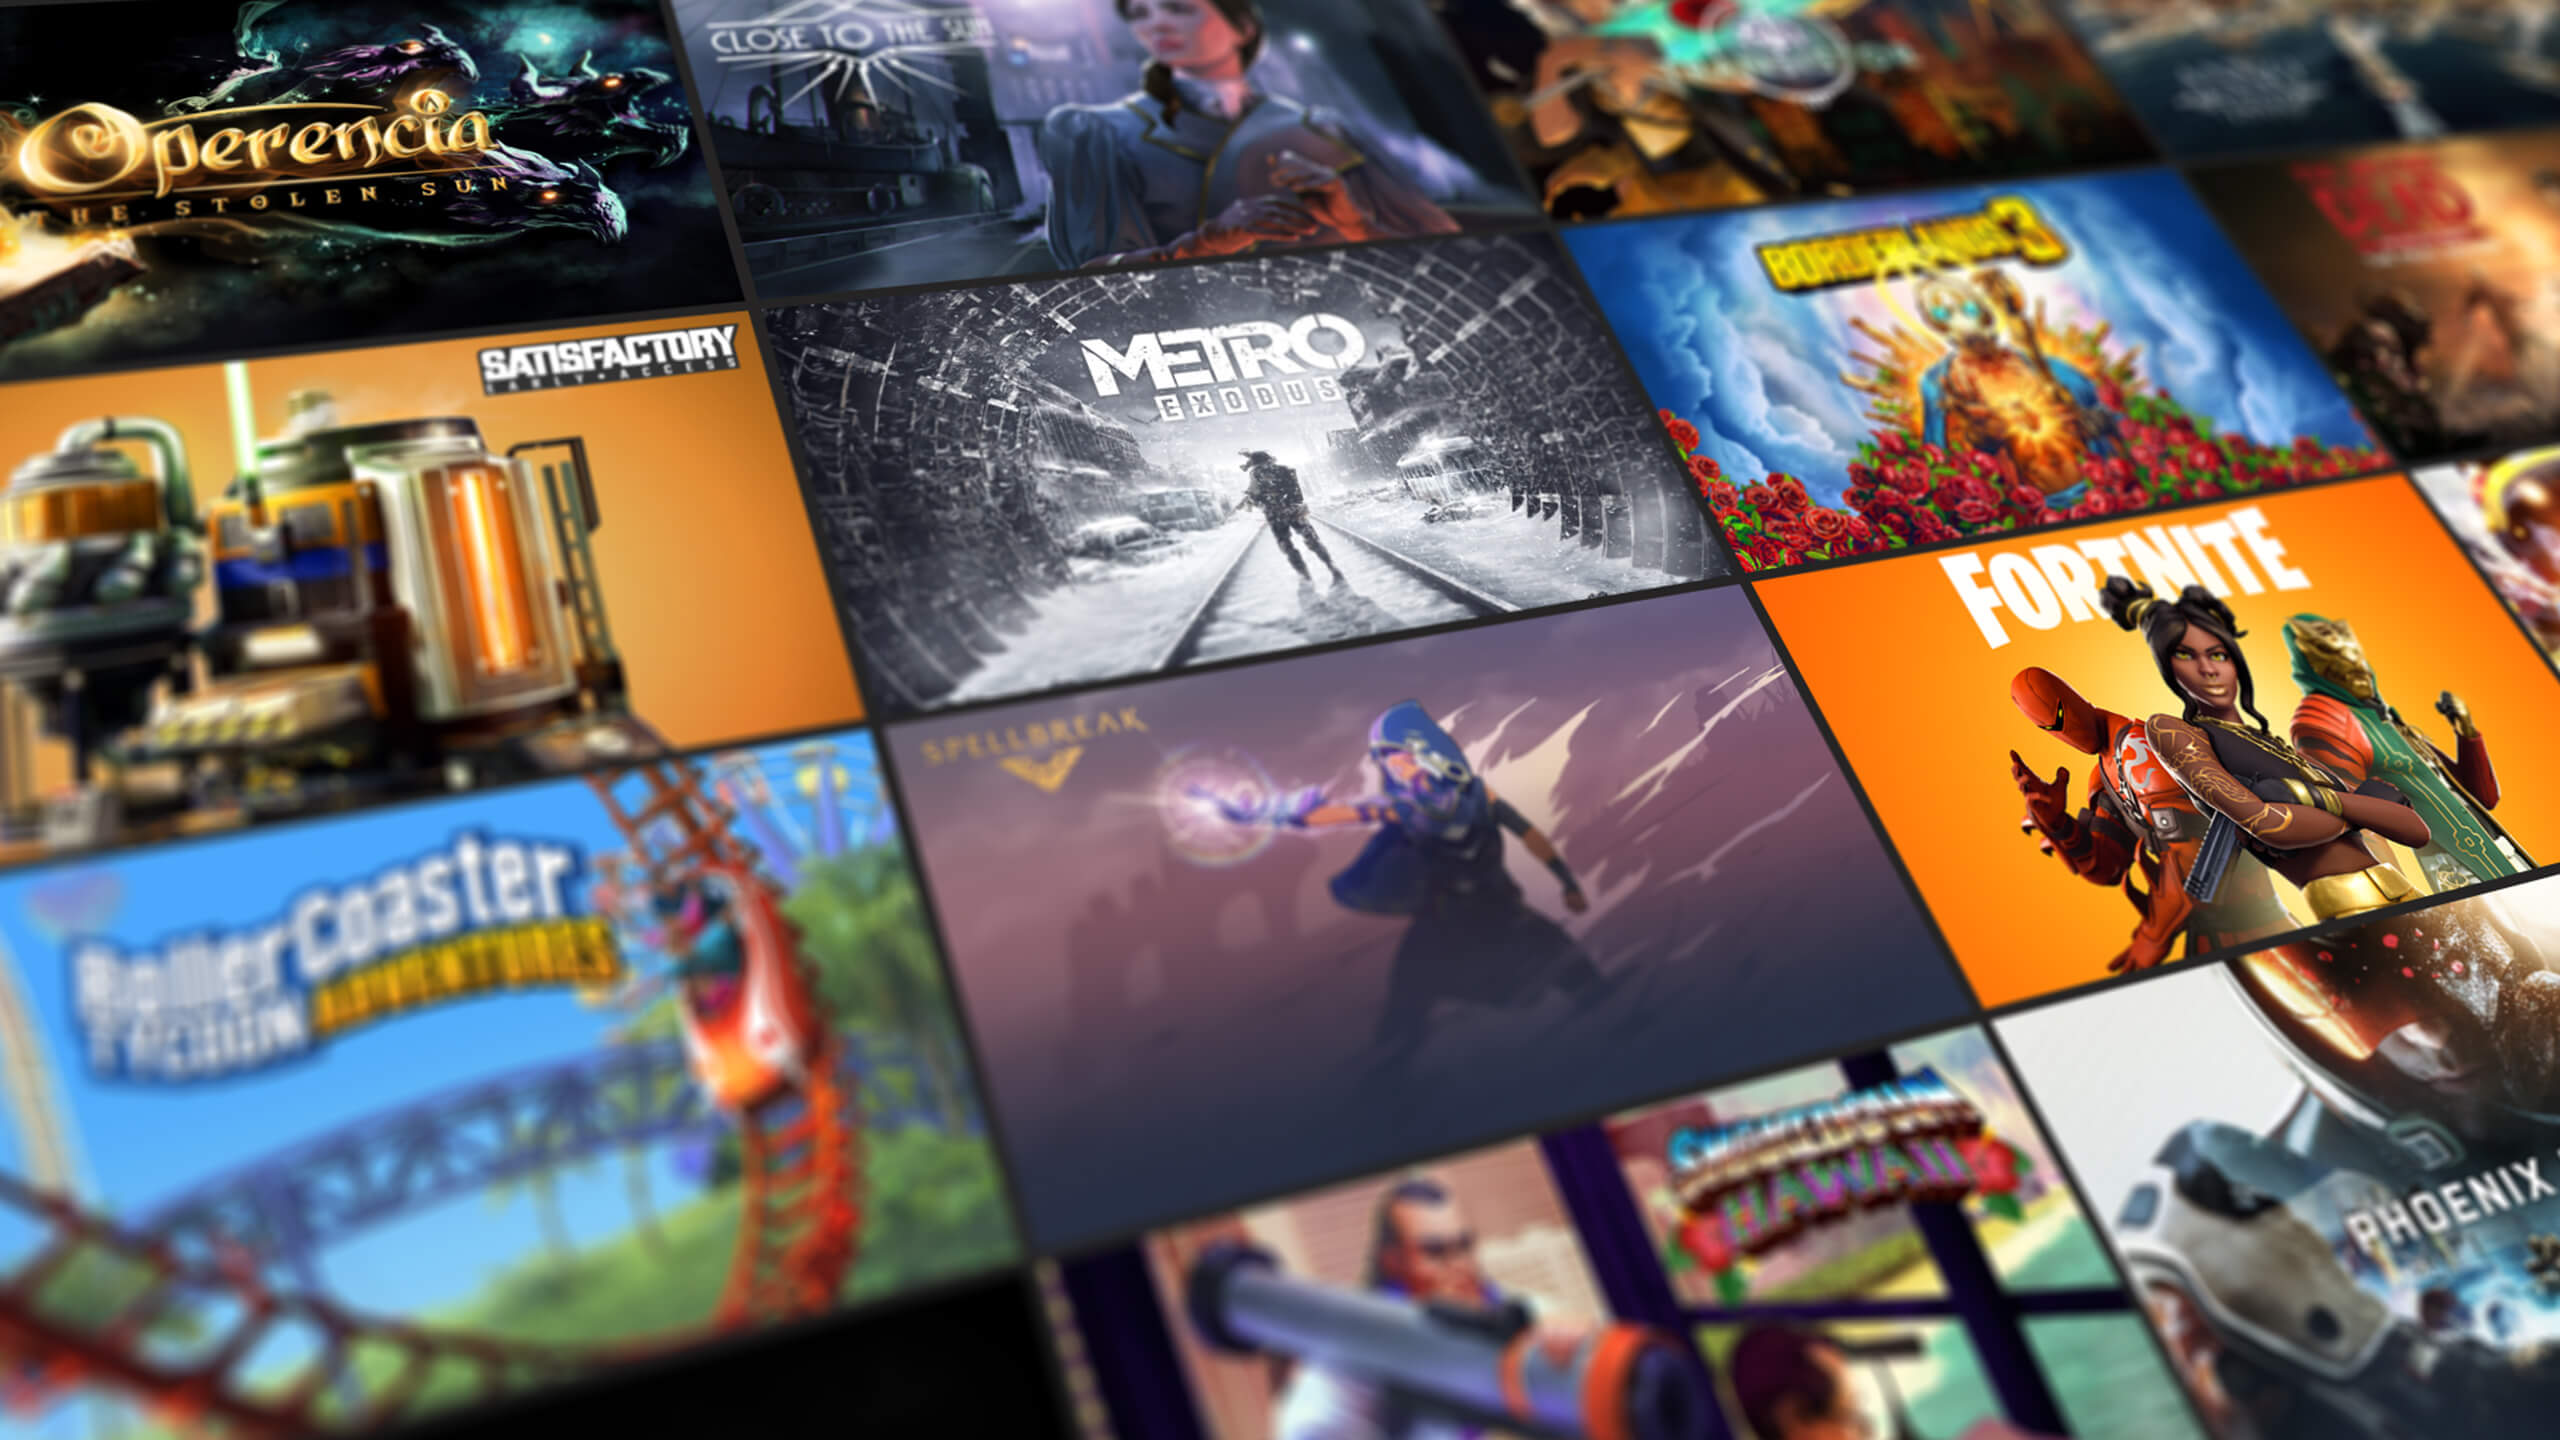 Epic Games libera jogos gratuitos da semana; confira - Vídeo Dailymotion